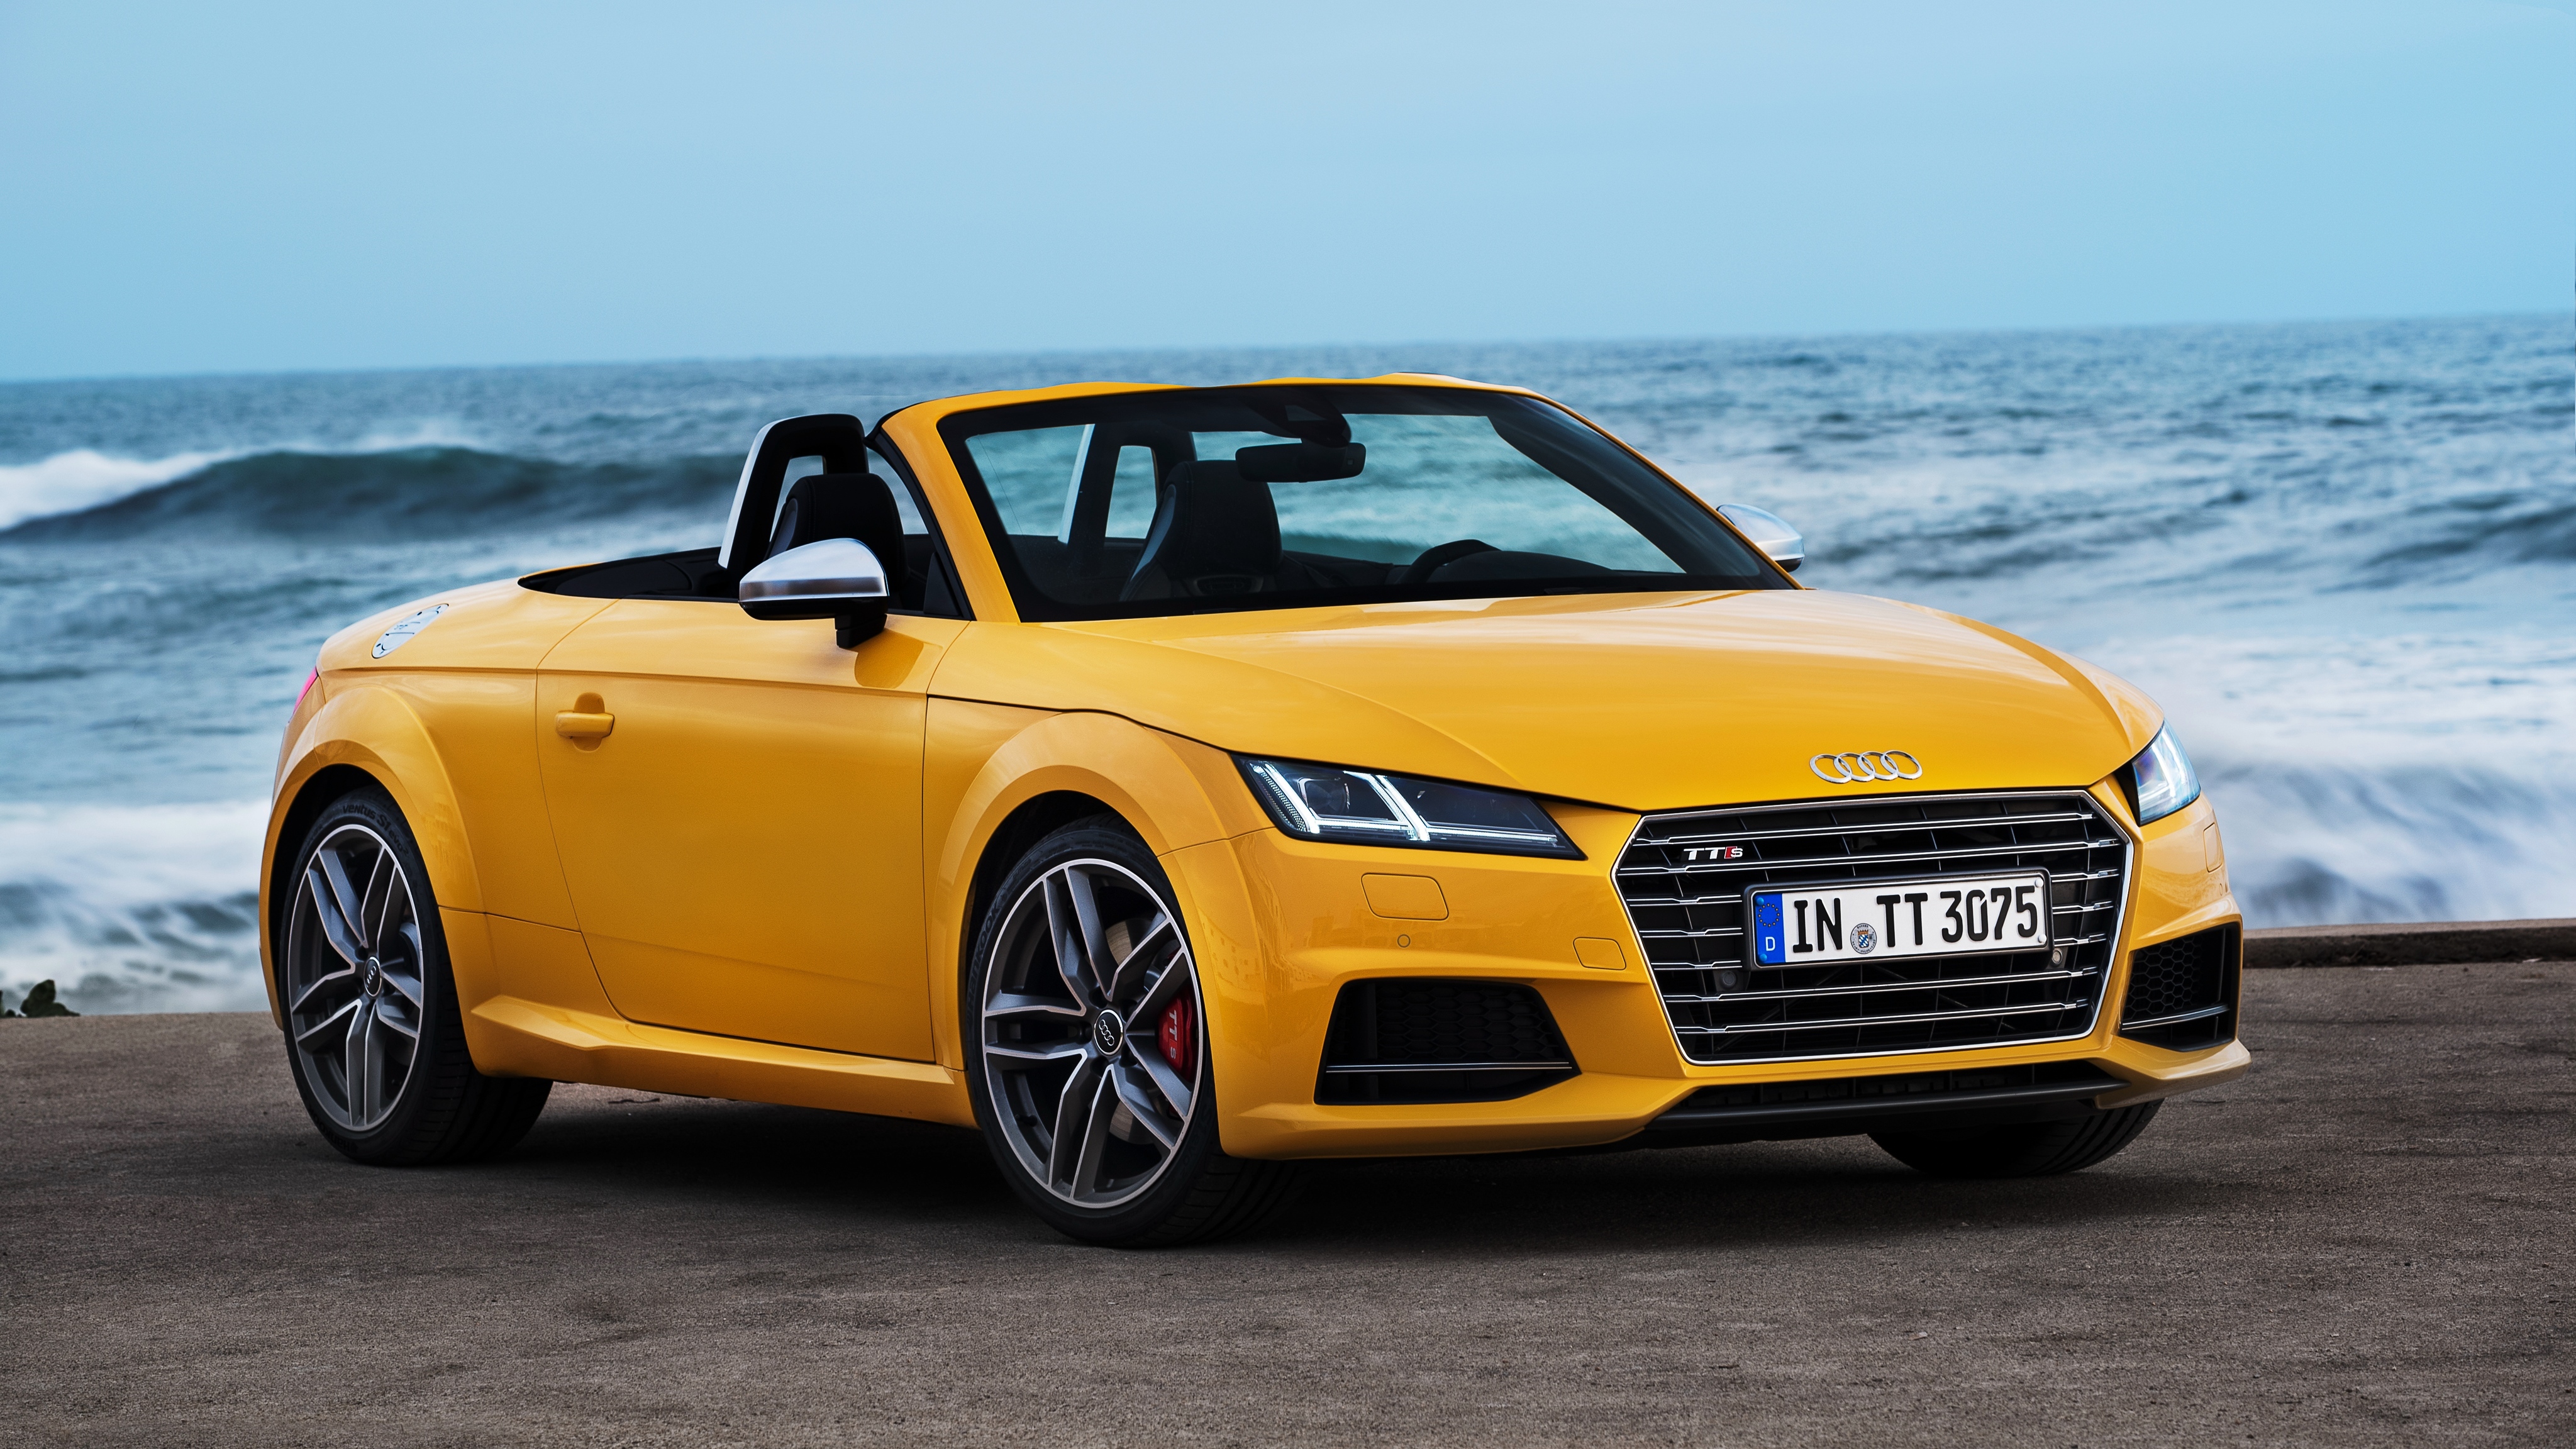 Download mobile wallpaper Audi, Car, Audi Tt, Vehicles, Yellow Car, Audi Tt Roadster for free.